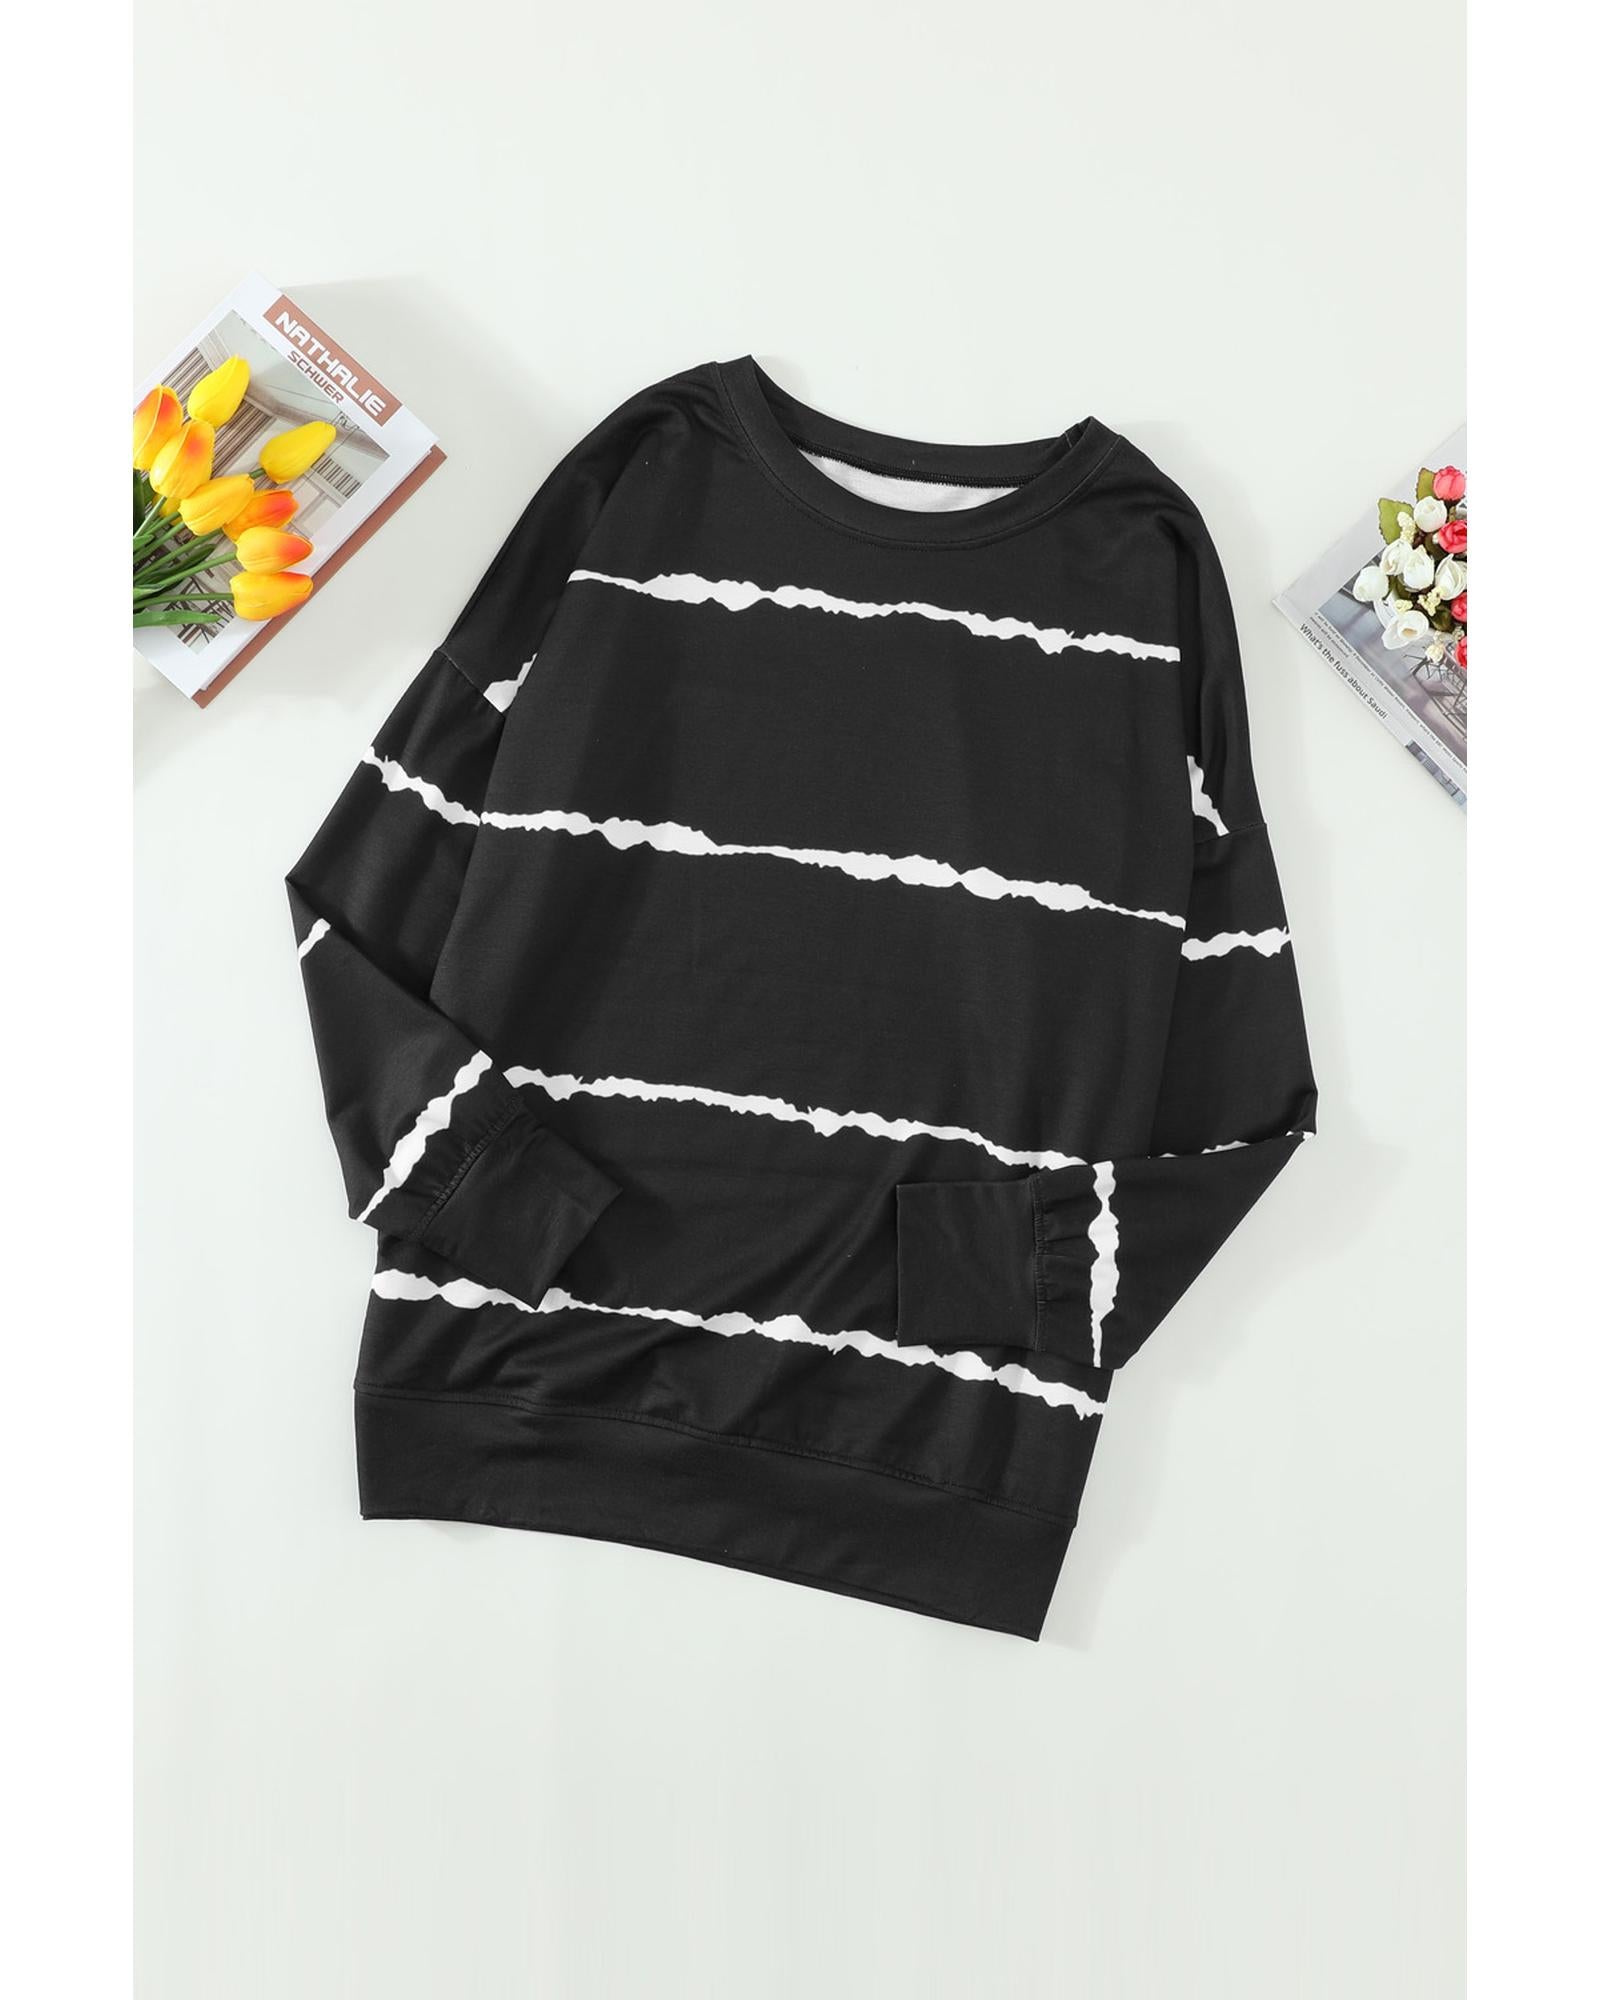 Azura Exchange Abstract Striped Long Sleeve Sweatshirt - S